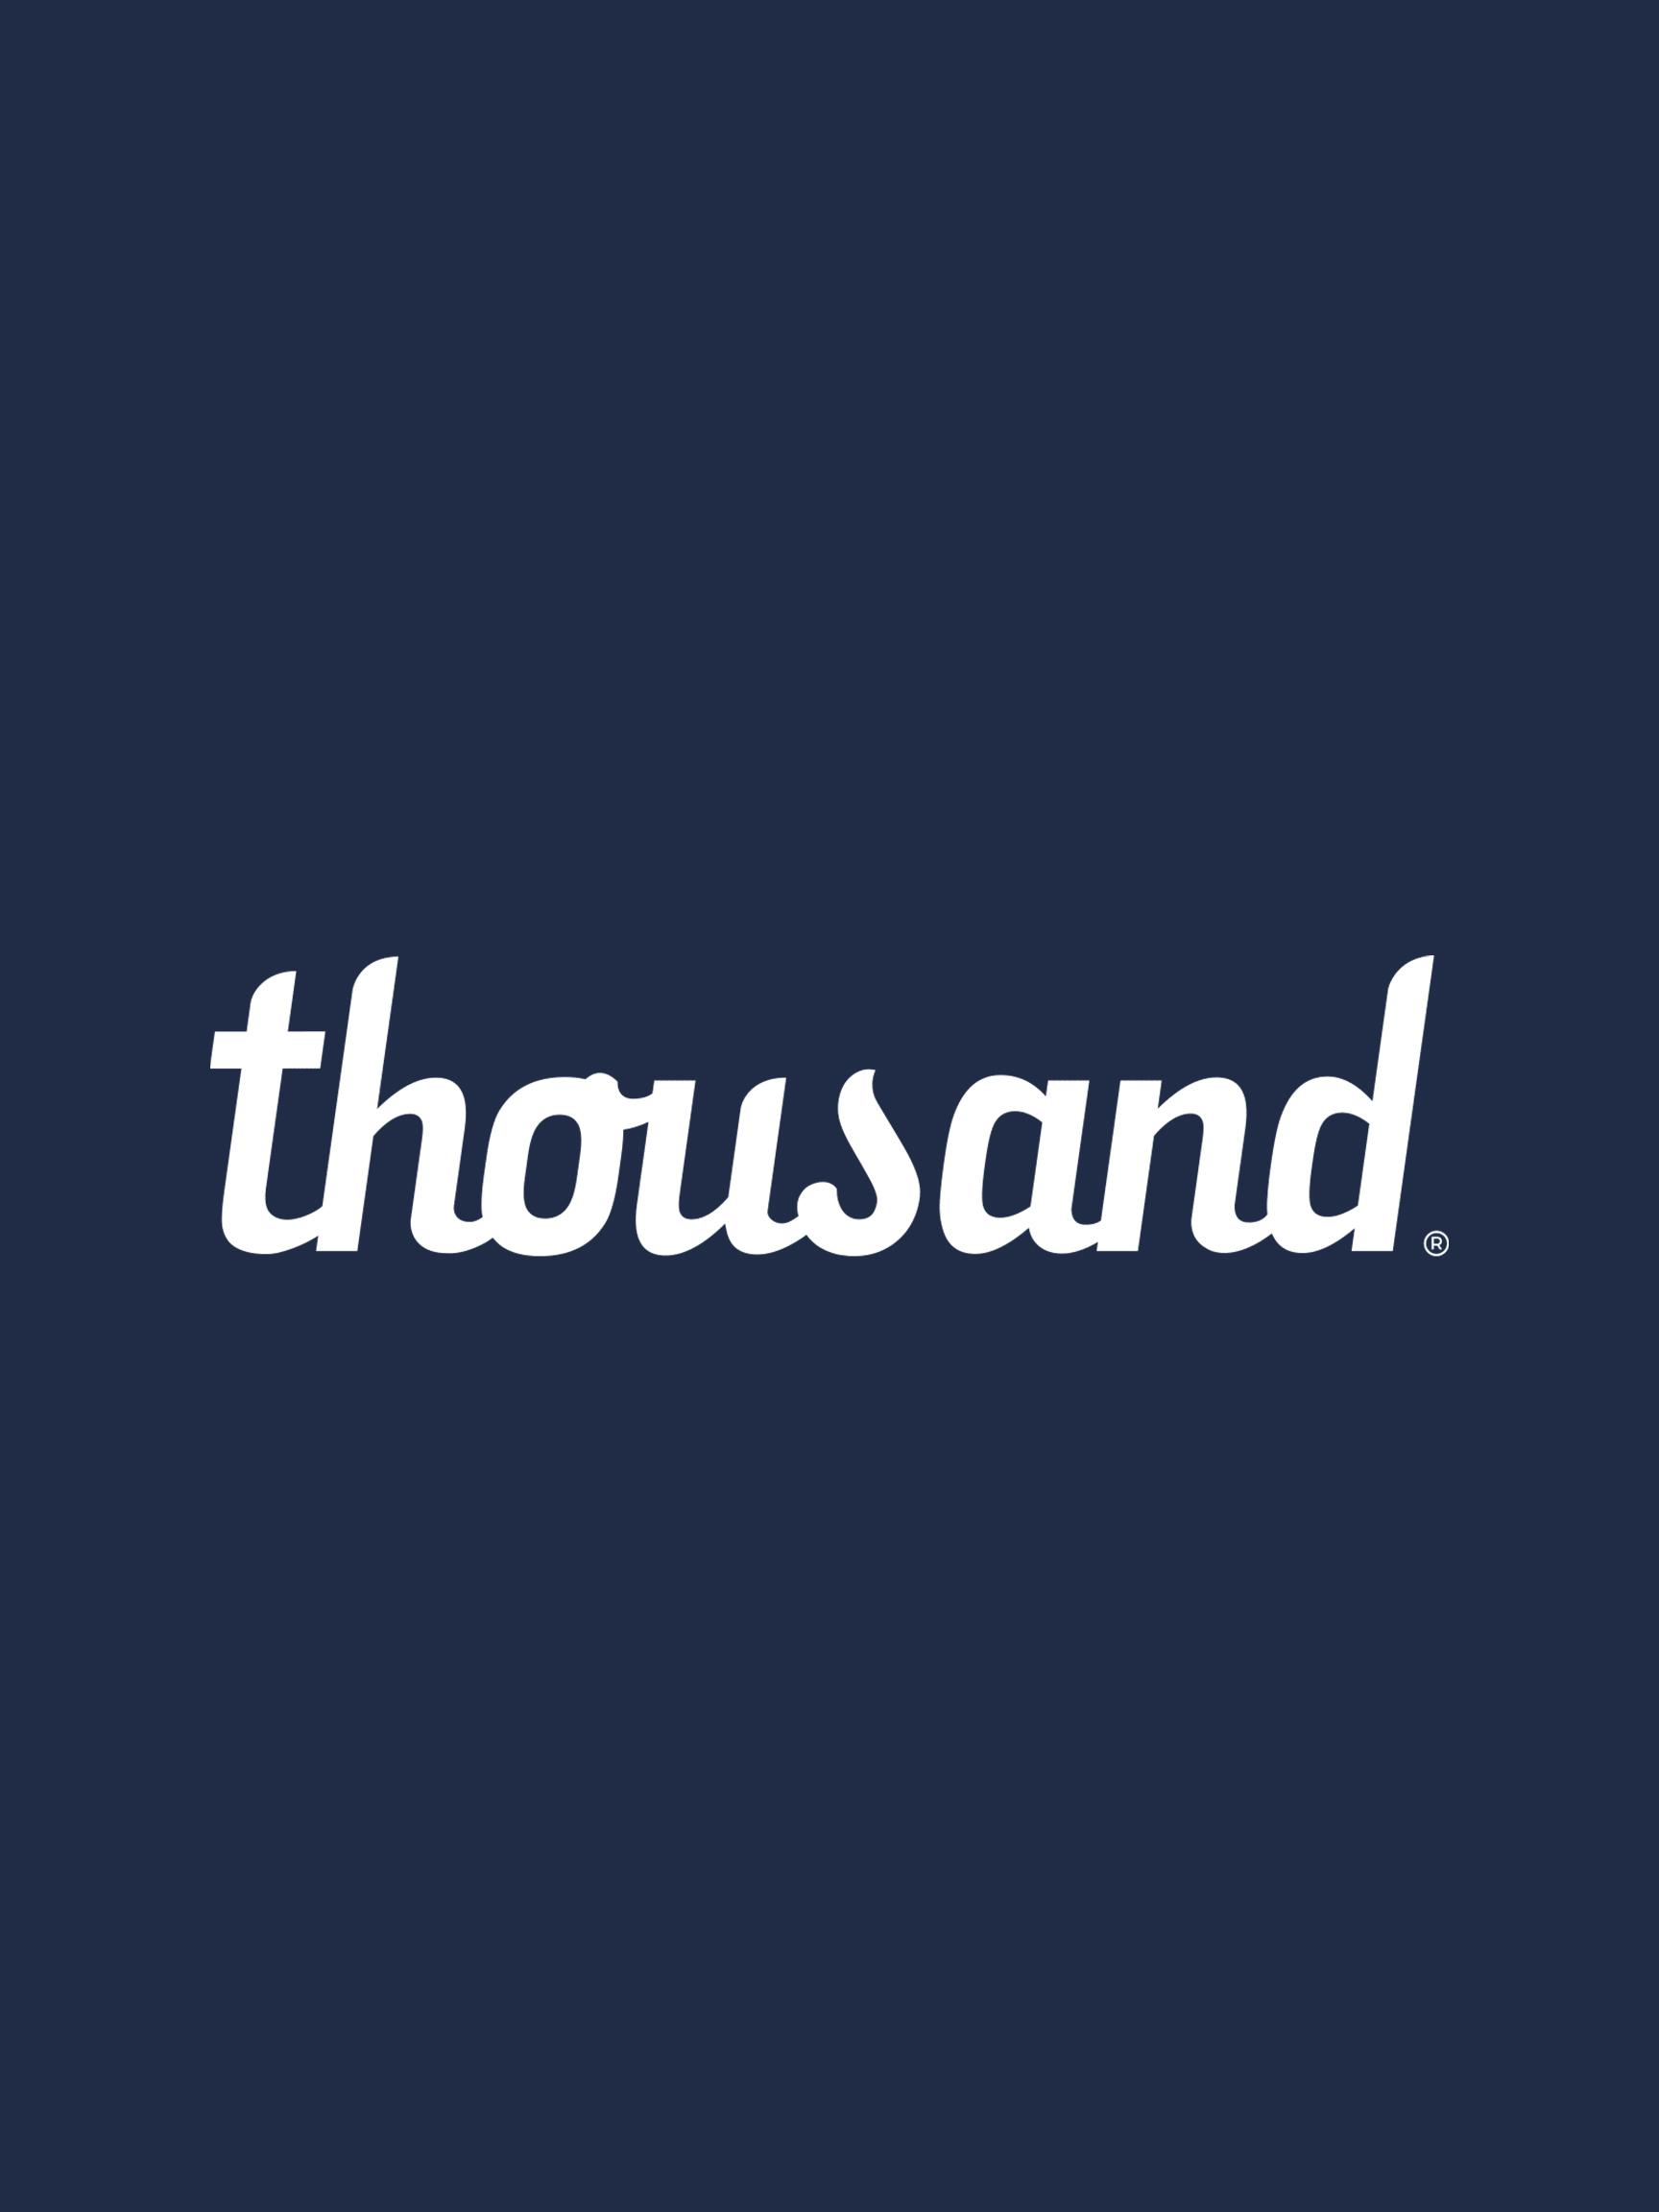 thousand logo 2x